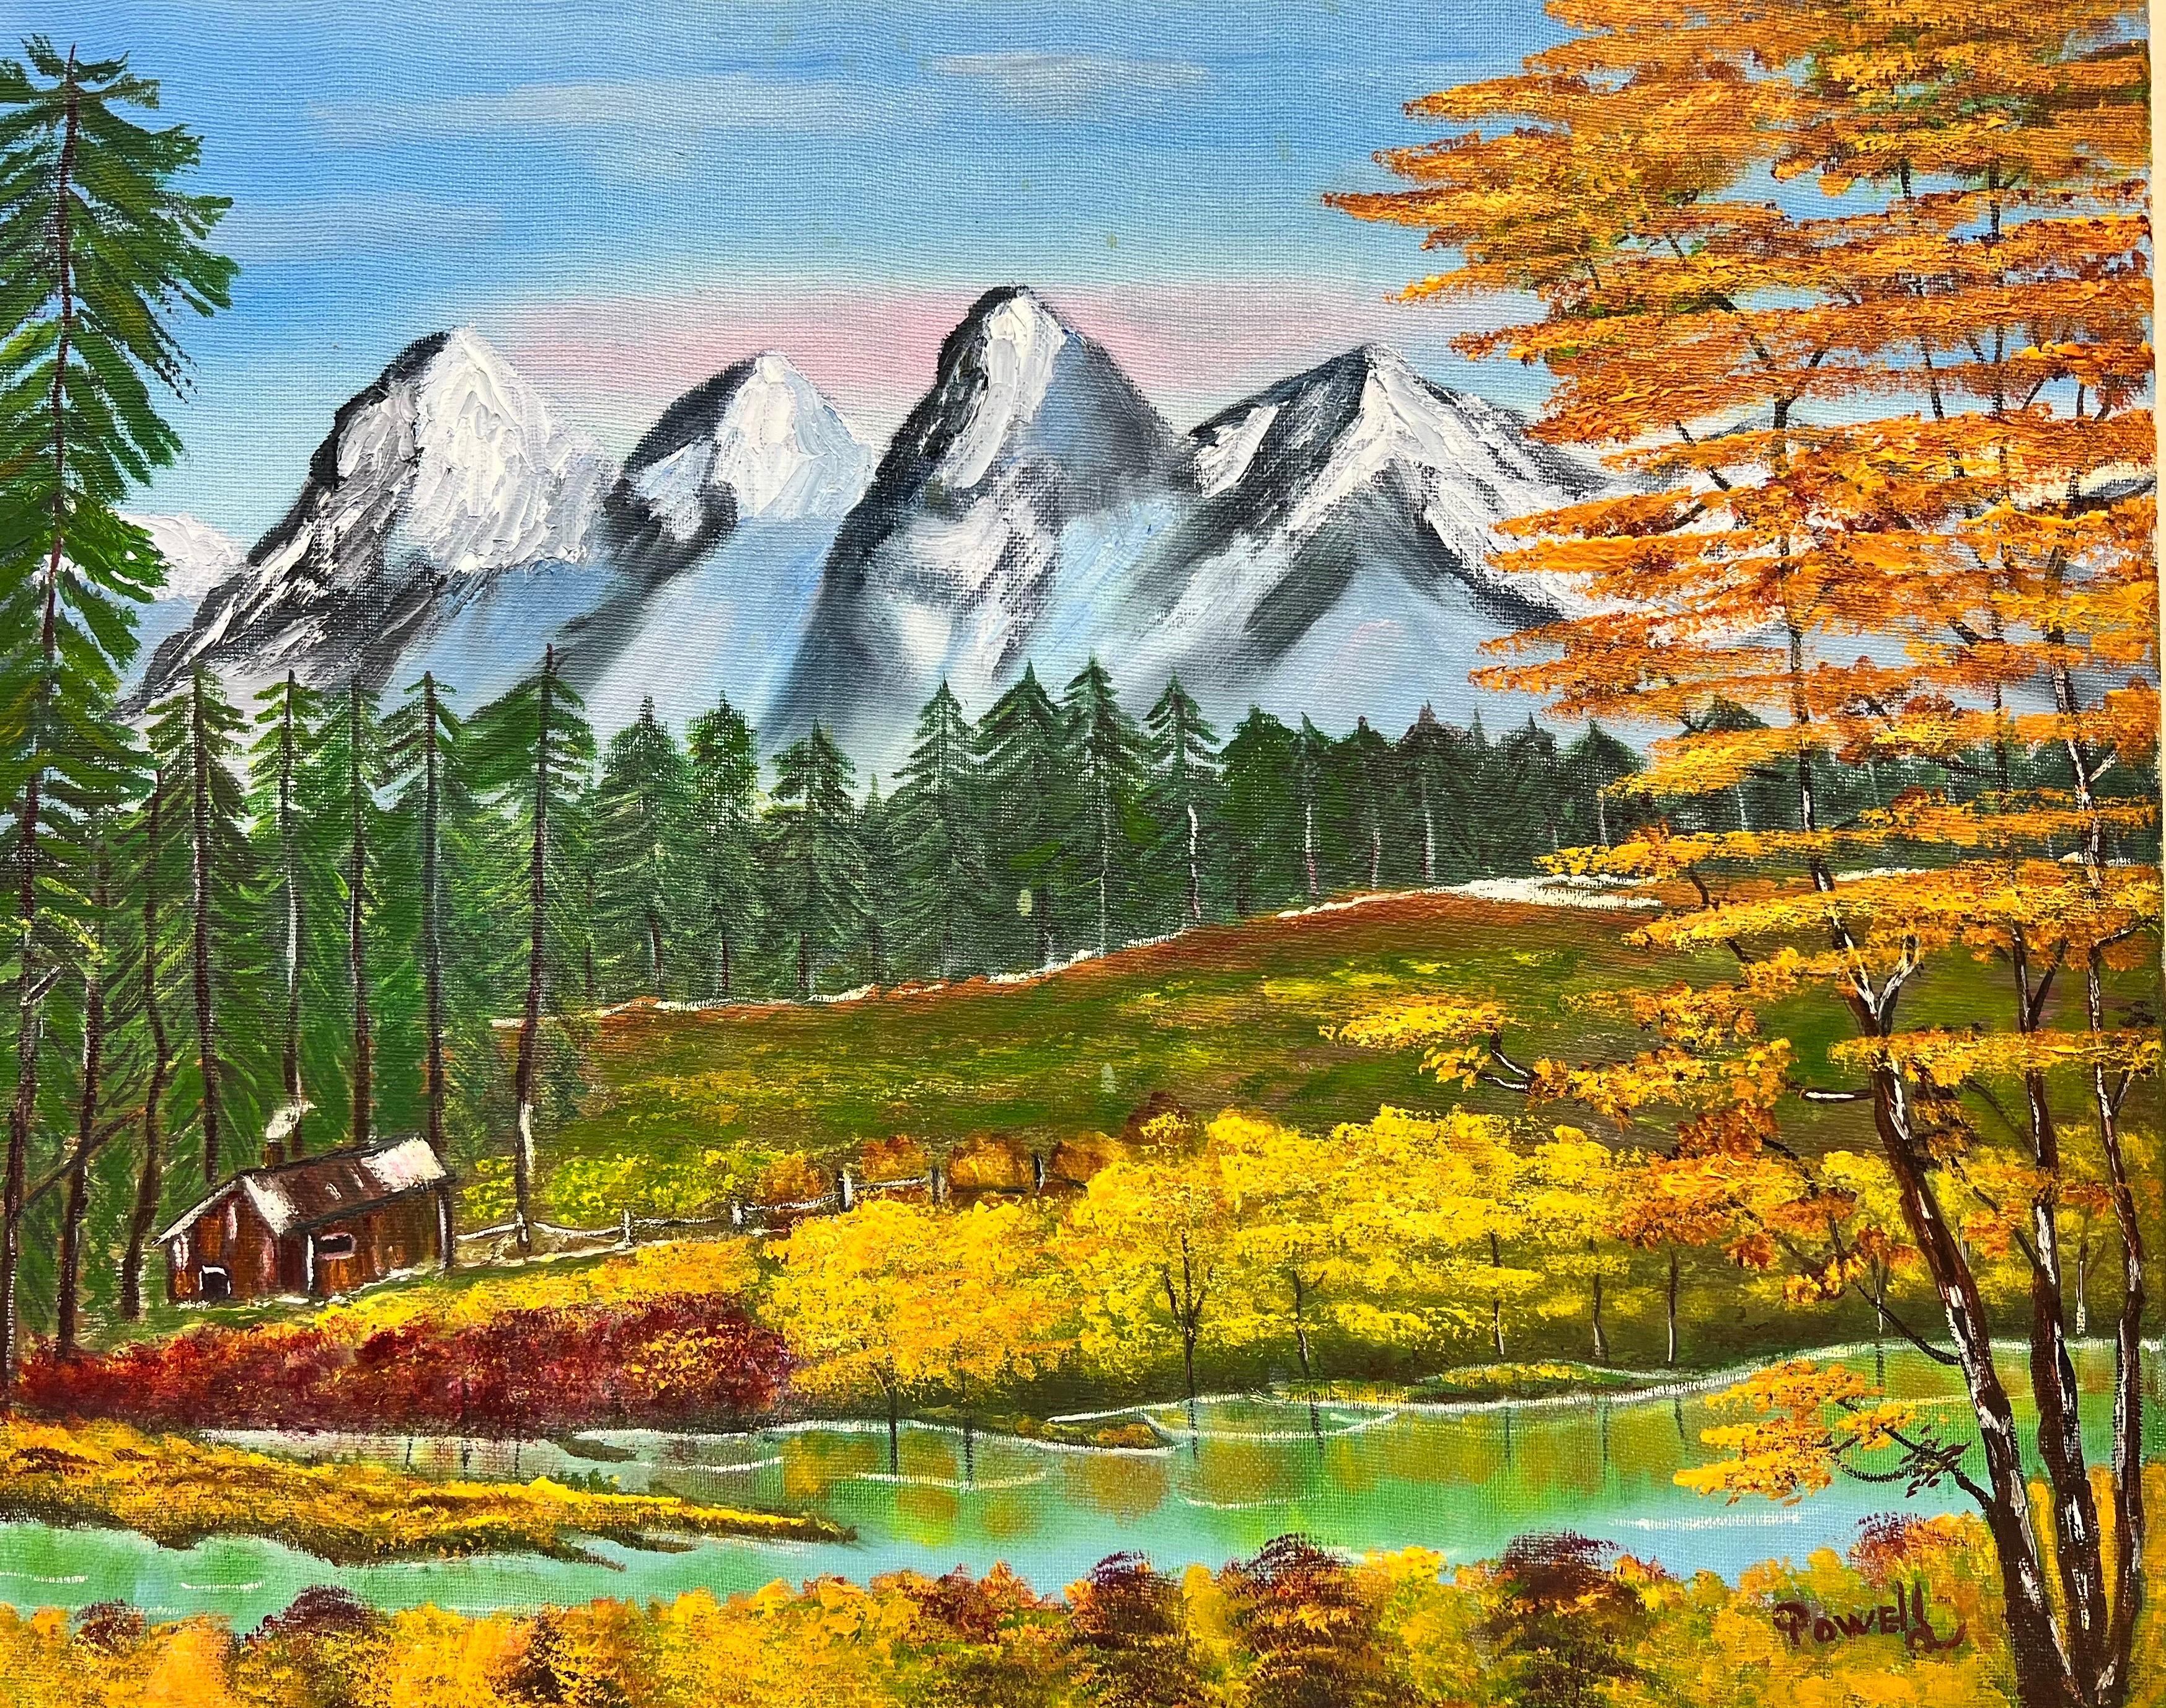 Peinture britannique originale des Highlands écossais, montagnes enneigées